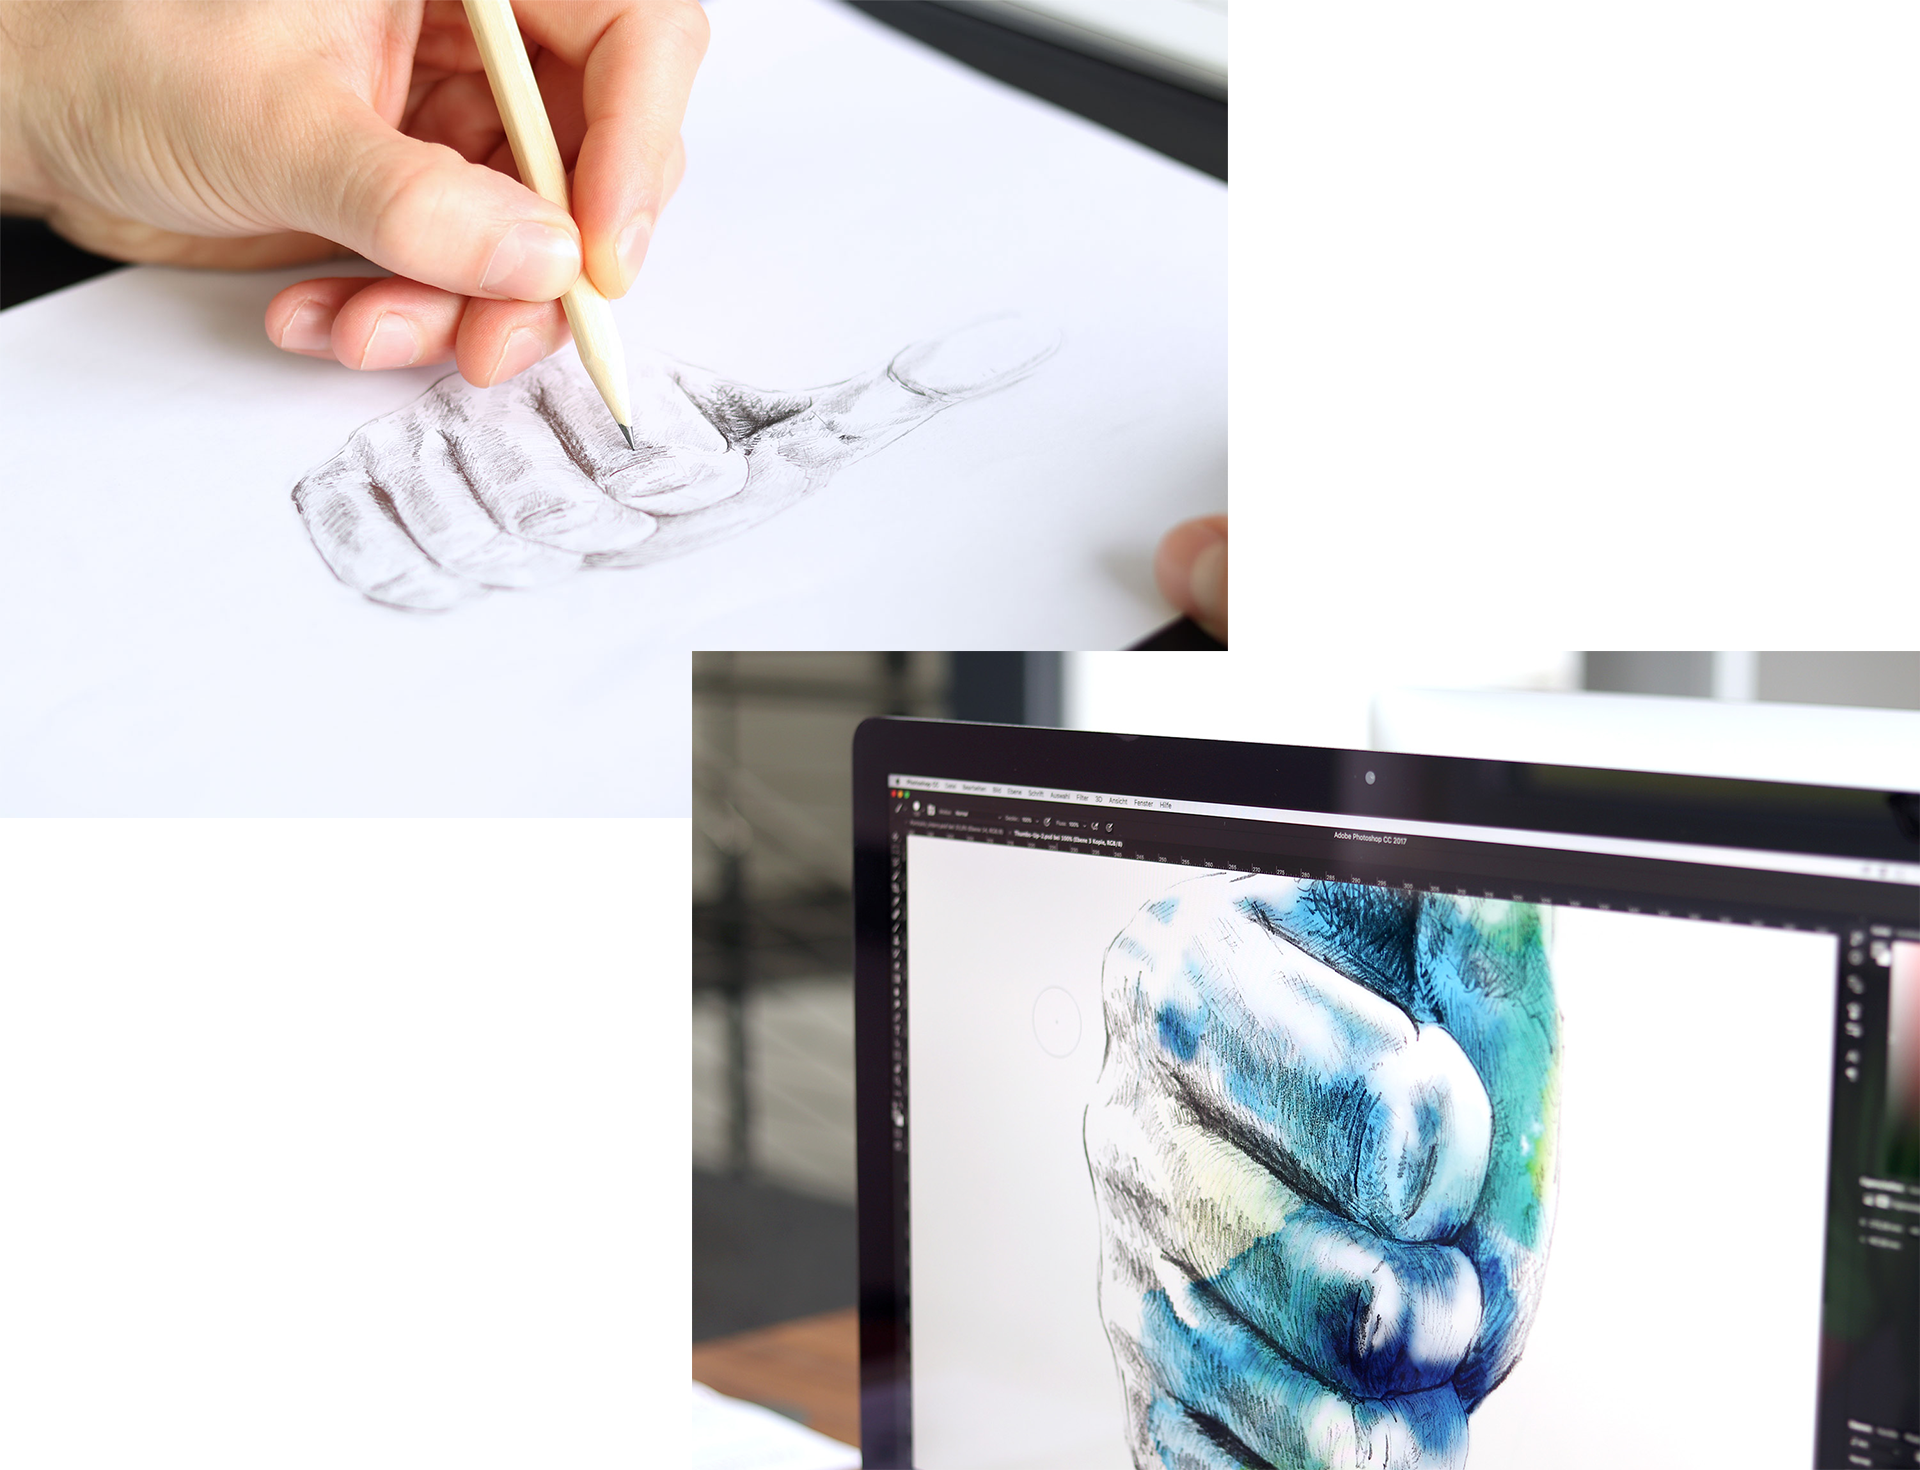 Stimmungsbild von einer Hand die gerade eine Bleistiftskizze anfertigt und später am Rechner koloriert